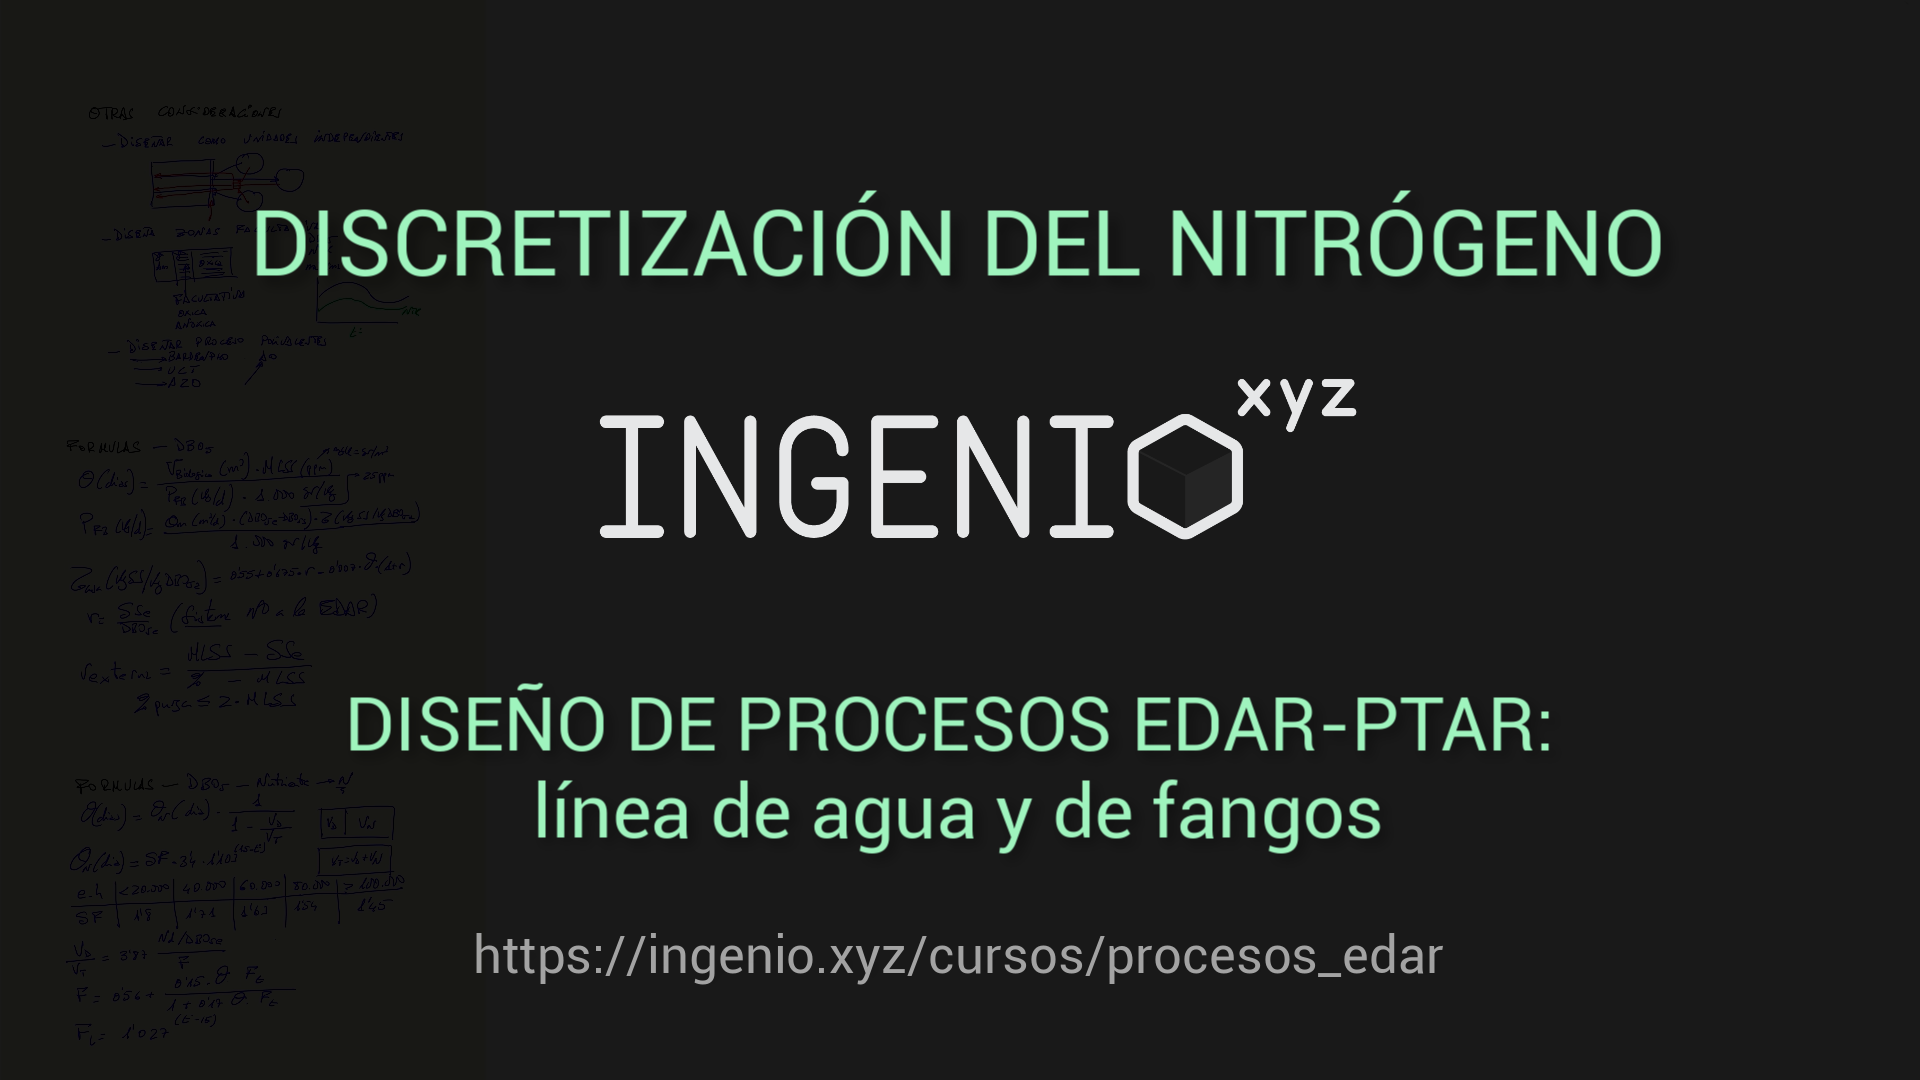 Imagen principal del artículo 'Fangos activos - Cálculo del nitrógeno a nitrificar y desnitrificar ' publicado en ingenio.xyz